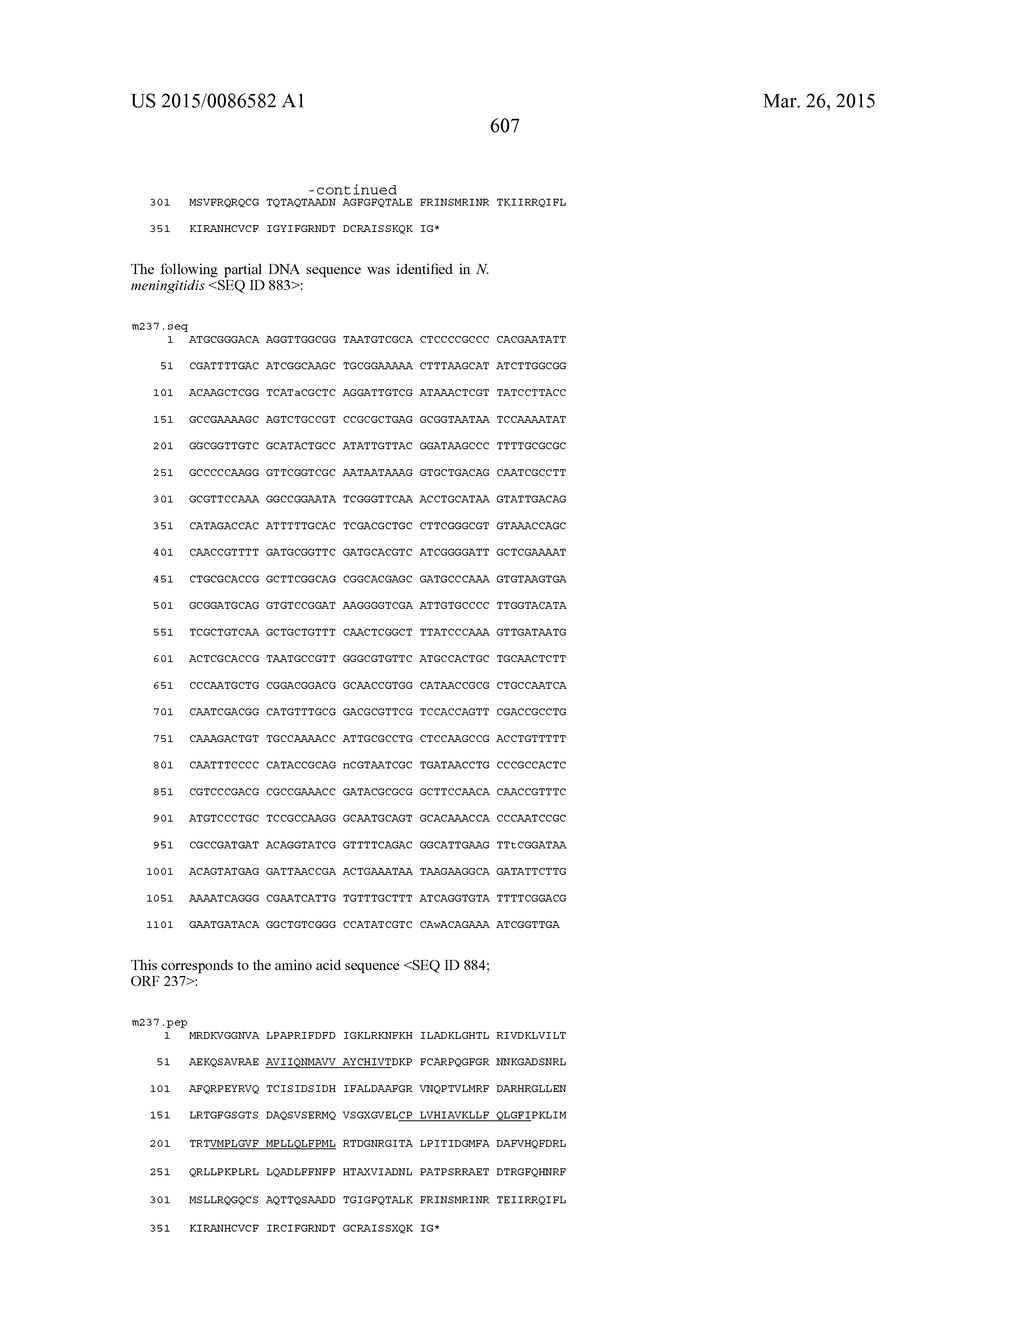 NEISSERIA MENINGITIDIS ANTIGENS AND COMPOSITIONS - diagram, schematic, and image 639